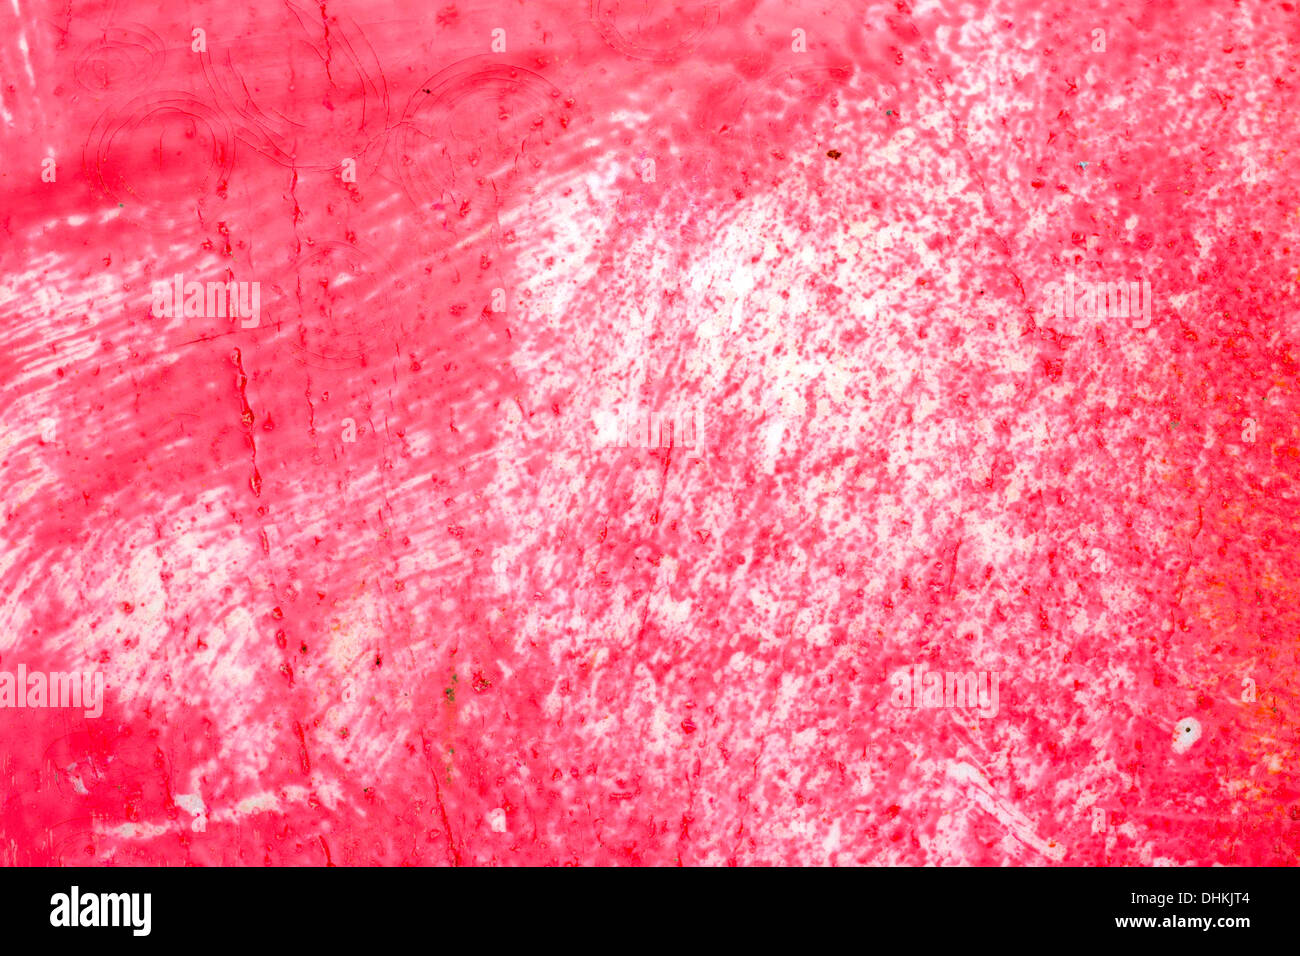 Cerrar vista de una superficie cubierta con pintura roja desgastada. Foto de stock